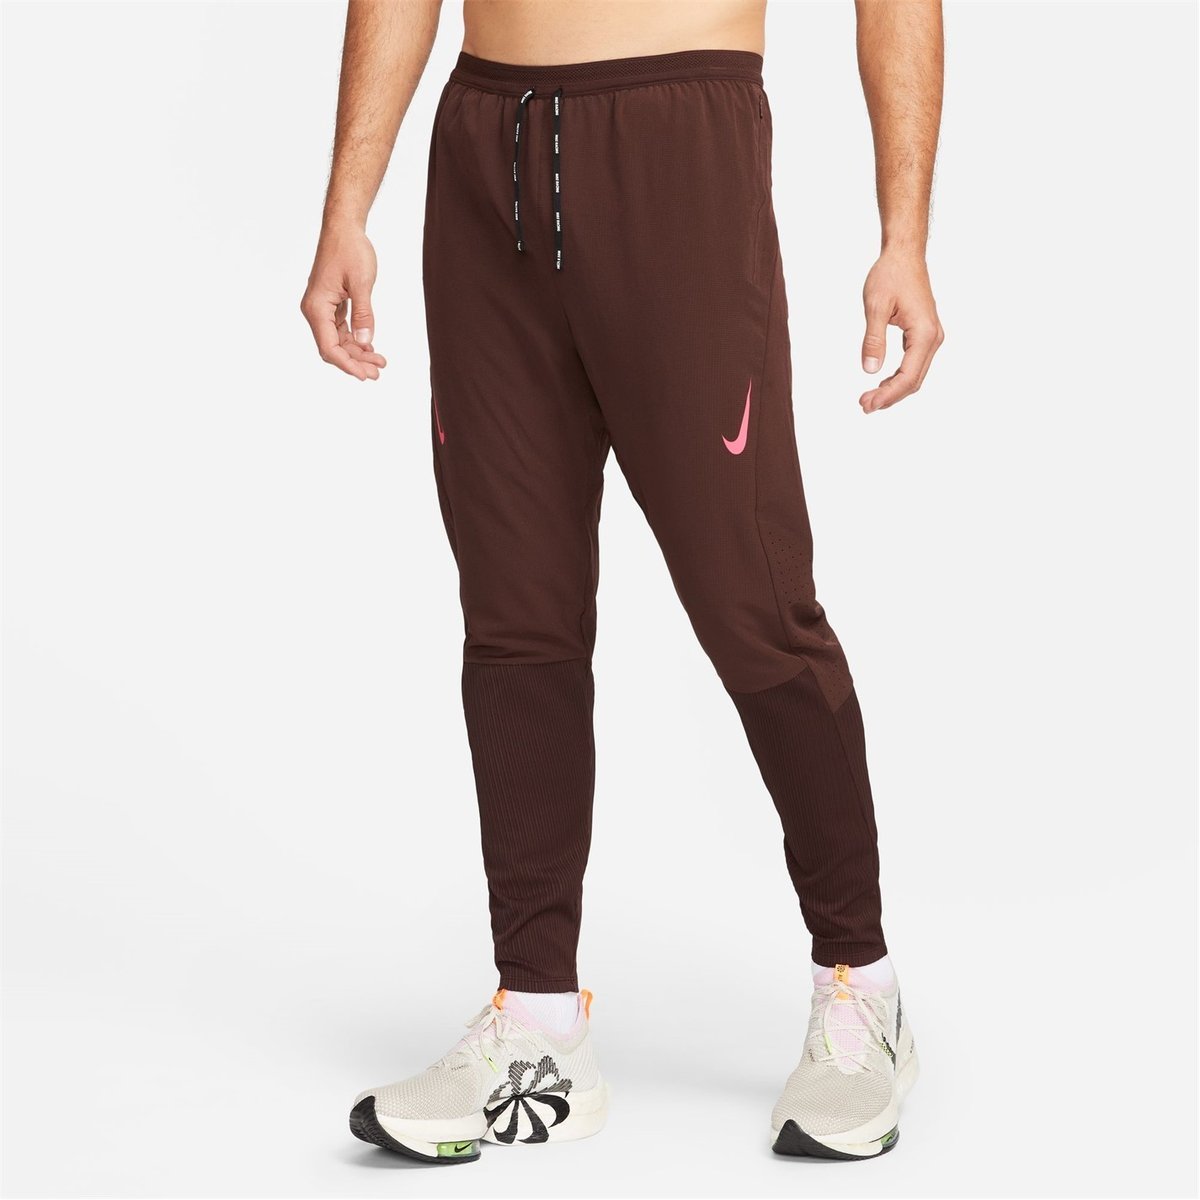 Nike Swift Women's Running Trousers - Red | Womens running pants, Running  trousers, Pants for women